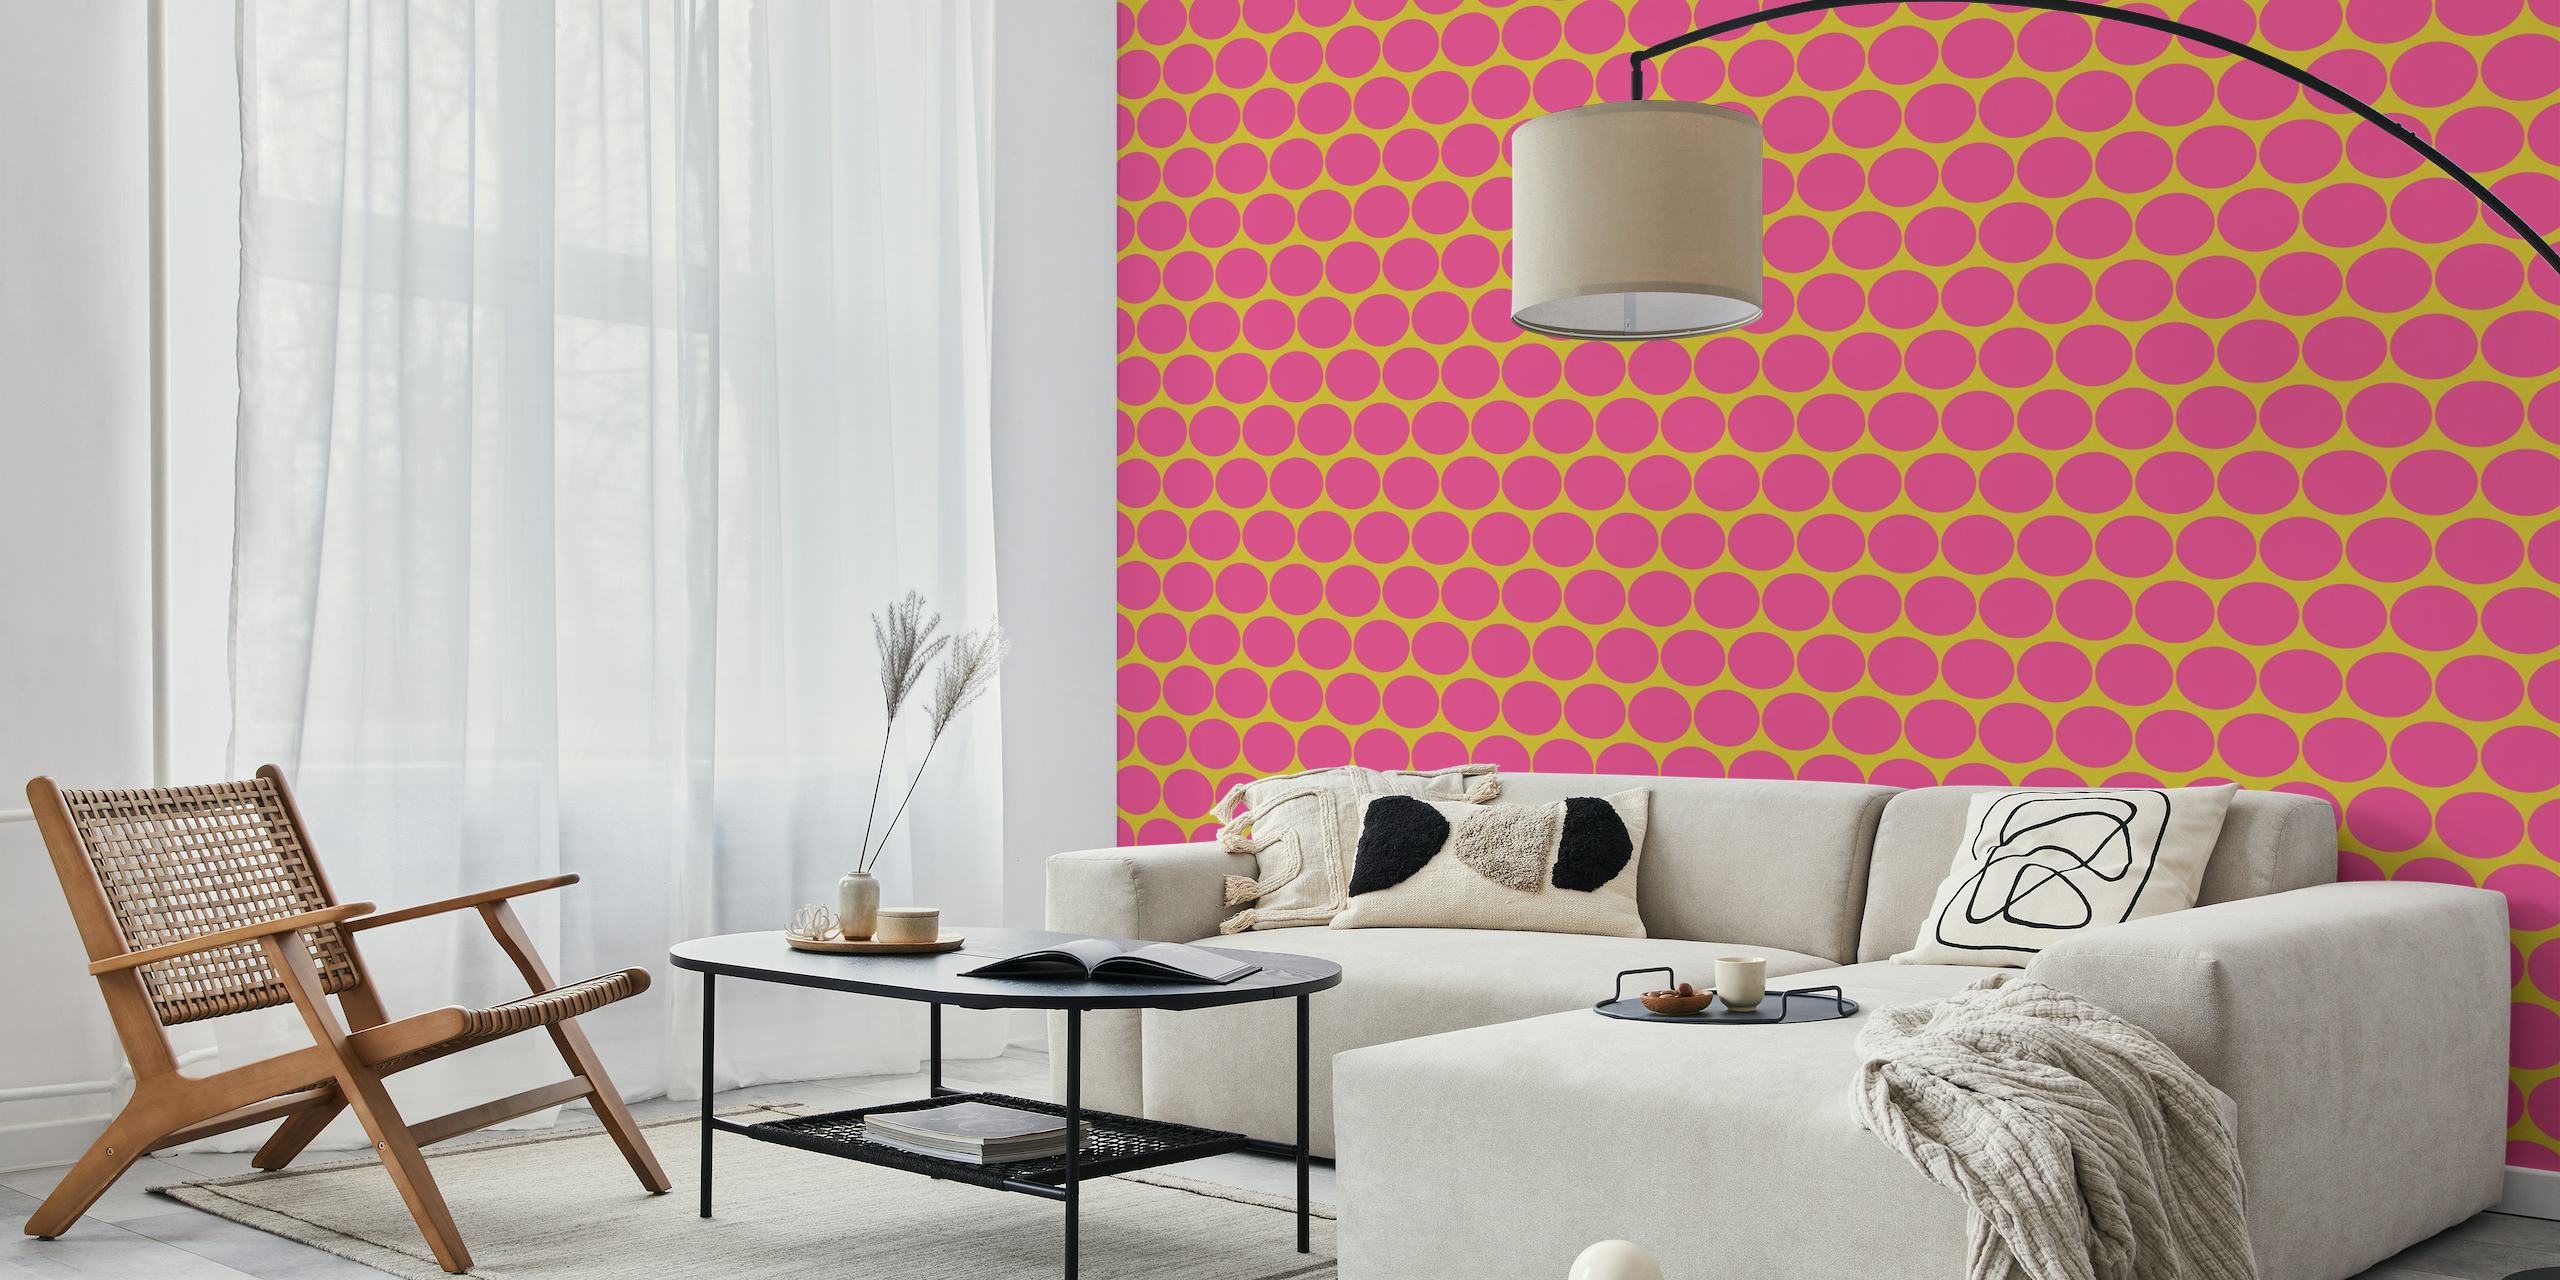 70s Big Dots - Hot Pink / Empire Yellow behang